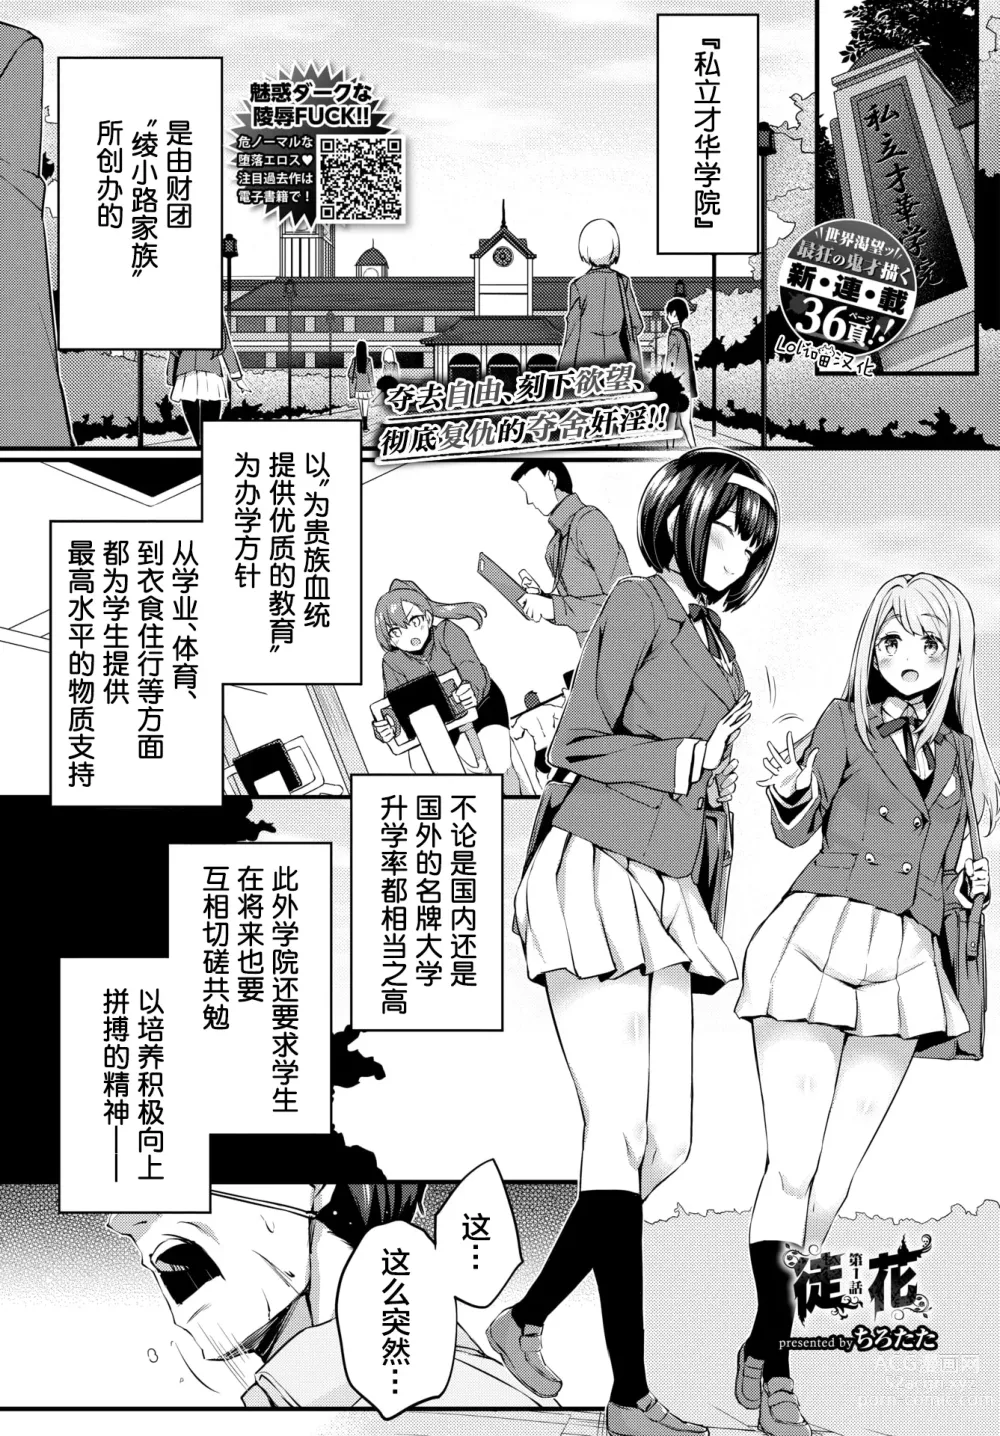 Page 1 of manga Adabana Ch.1